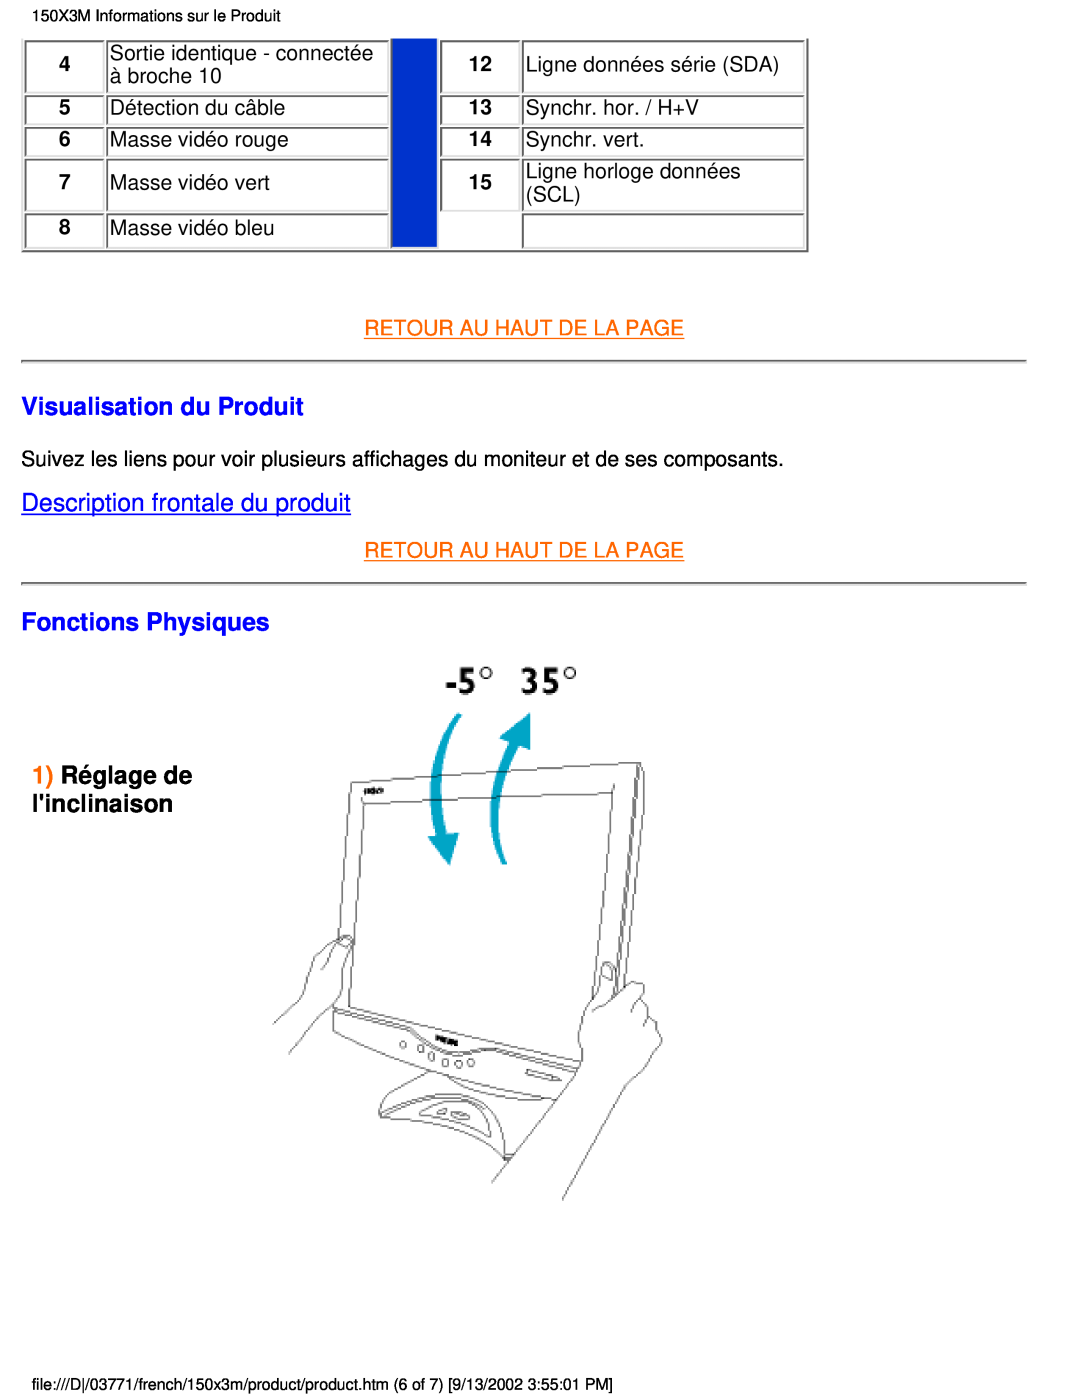 Philips 150X3M Visualisation du Produit, Description frontale du produit, Fonctions Physiques, 1 Réglage de linclinaison 